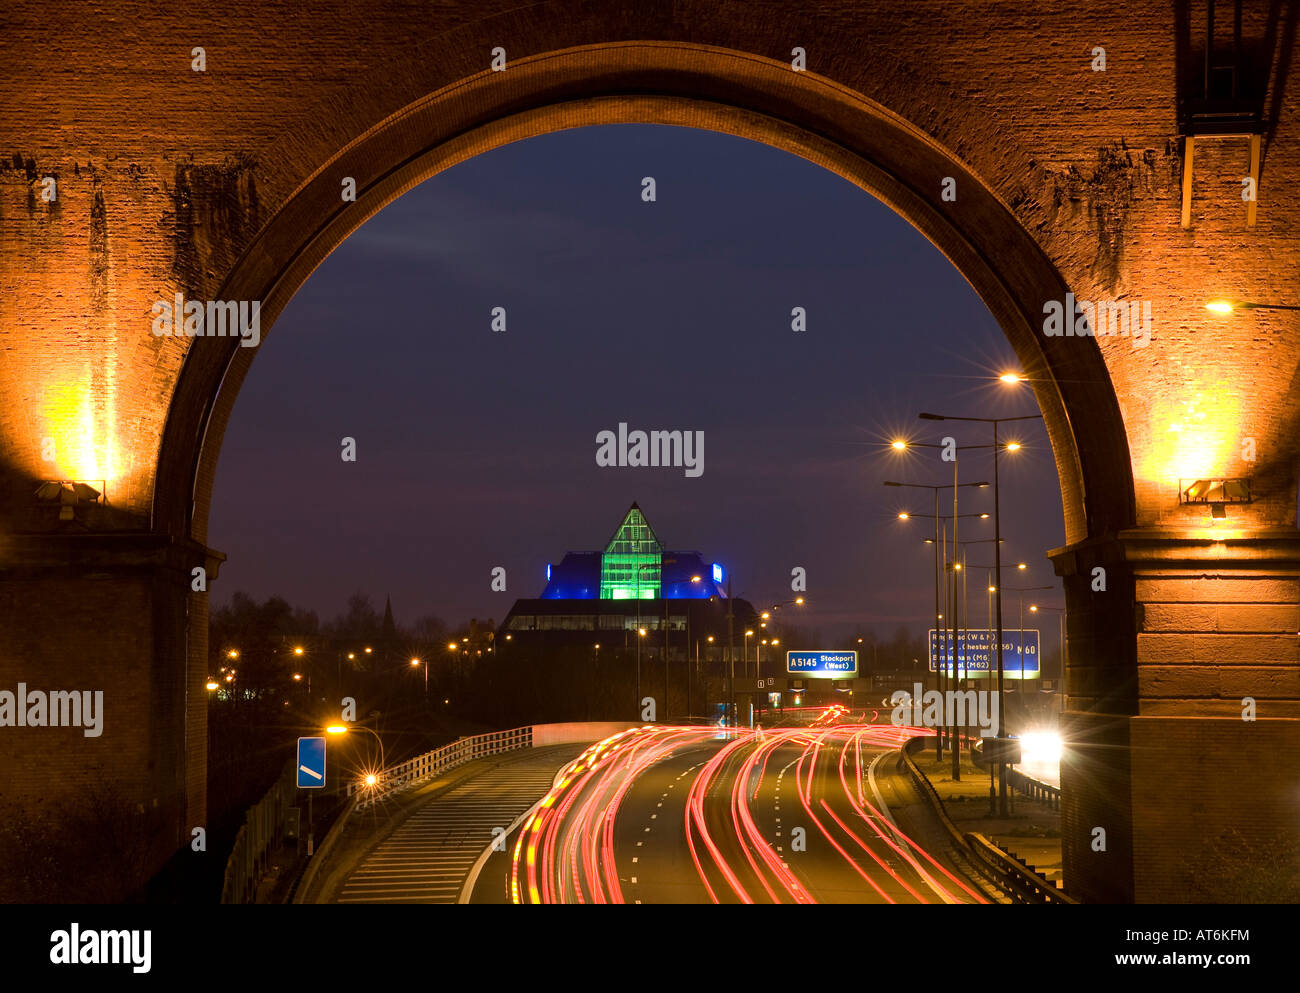 L'autoroute M60, pyramide de Stockport et Viaduc de nuit. Stockport, Greater Manchester, Royaume-Uni. Banque D'Images